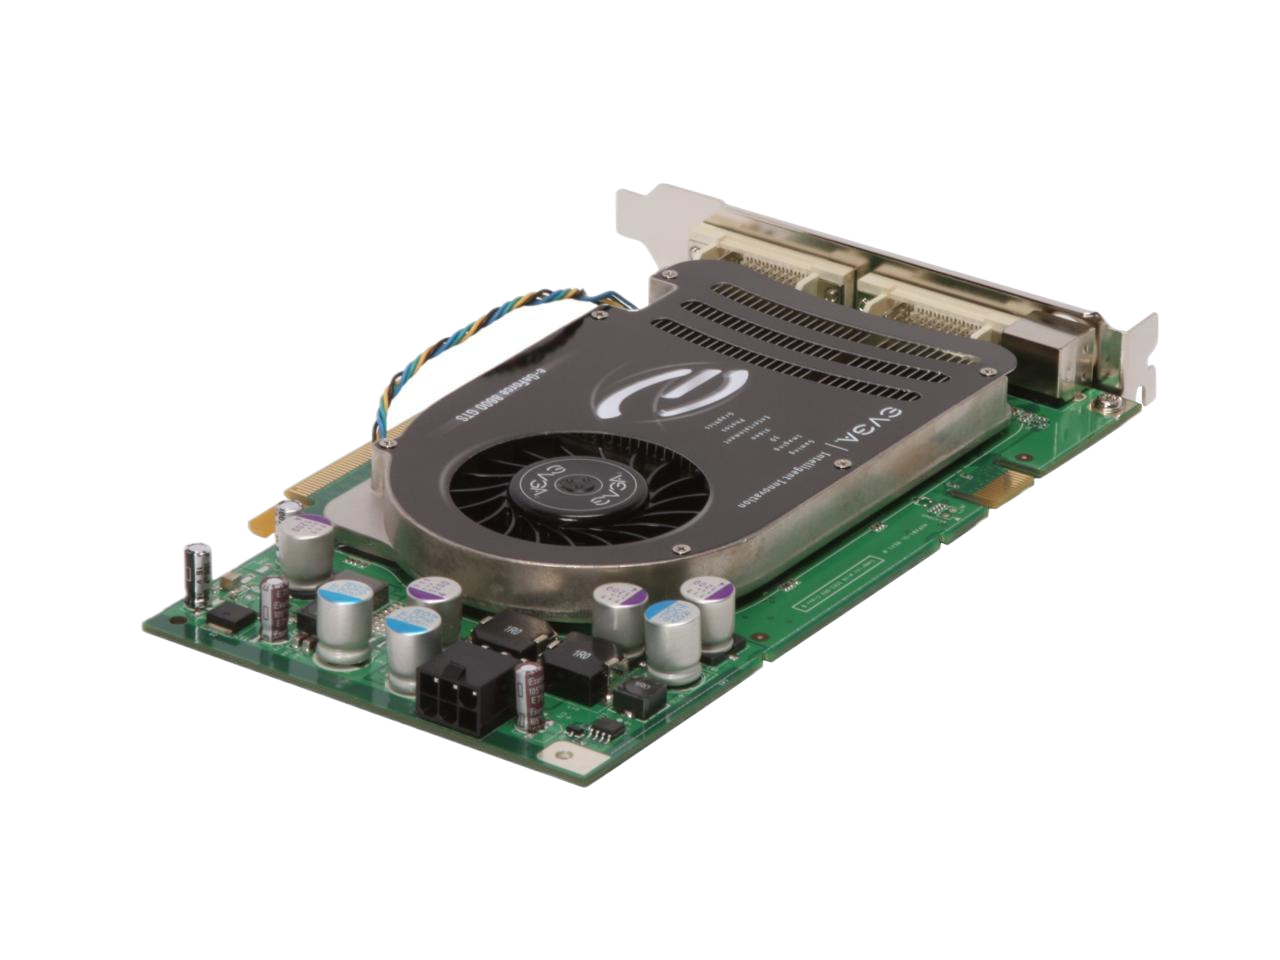 EVGA GeForce 8600 GTS 256MB GDDR3 PCI Express x16 SLI Support Video Card 256-P2-N761-TR